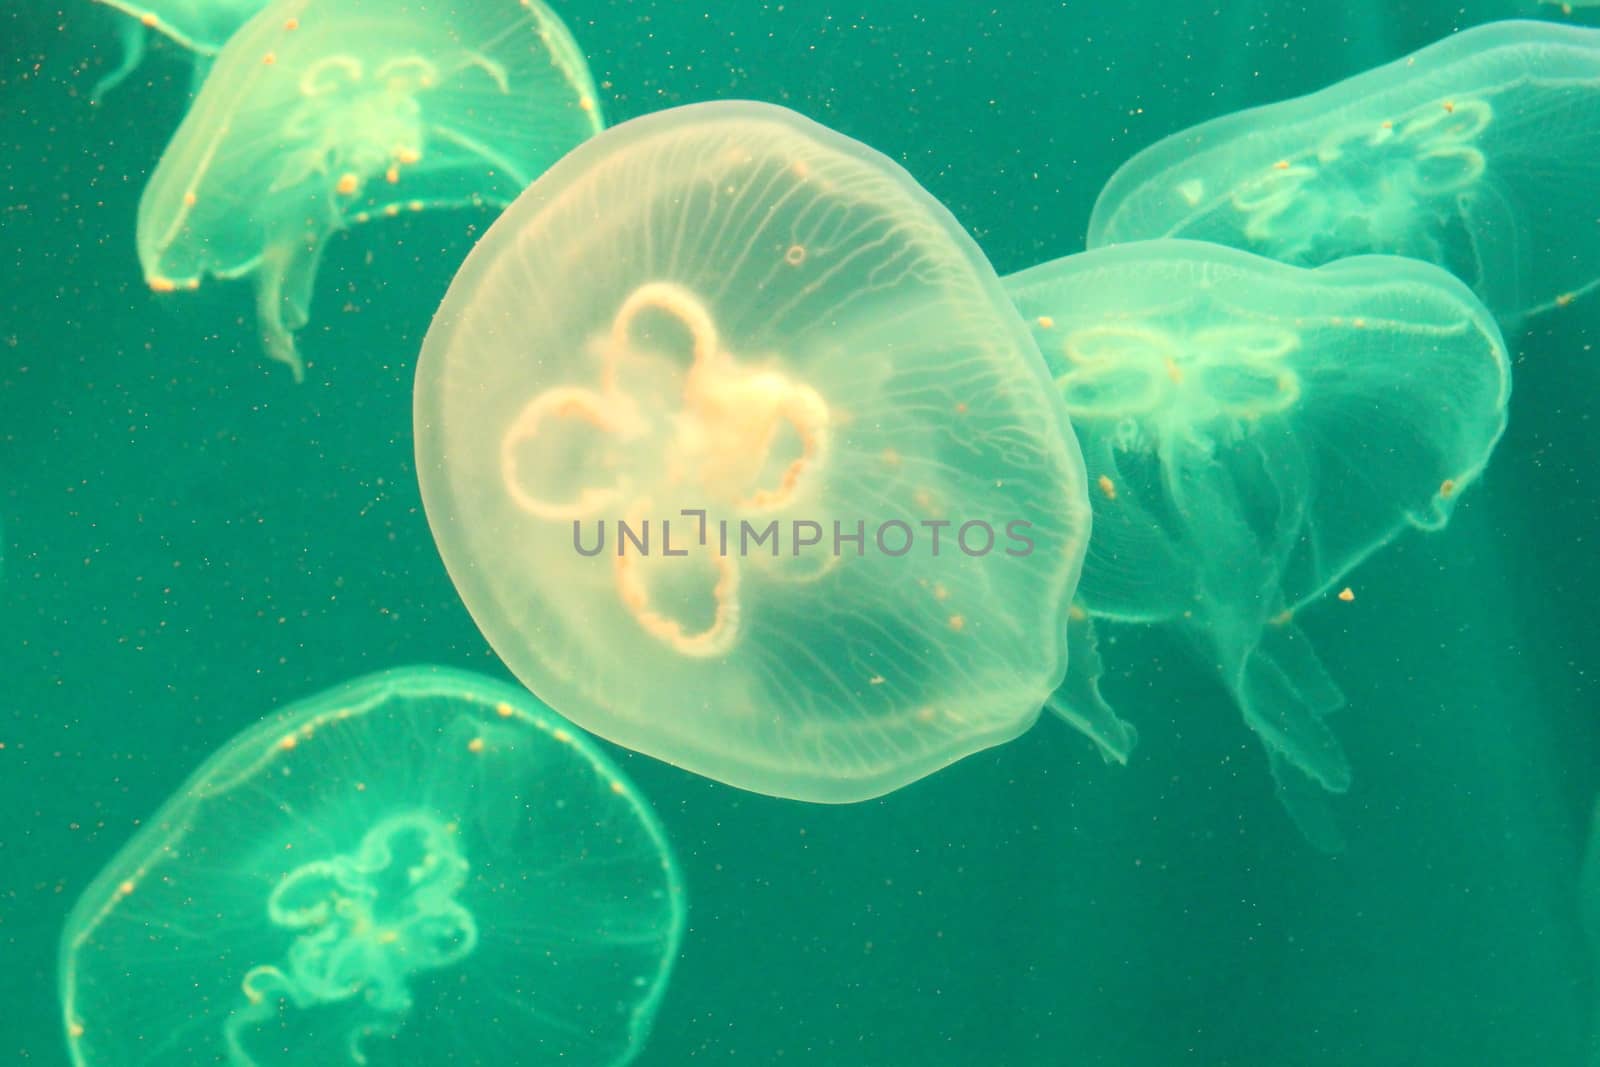 Jellyfish in the sea illuminated lights